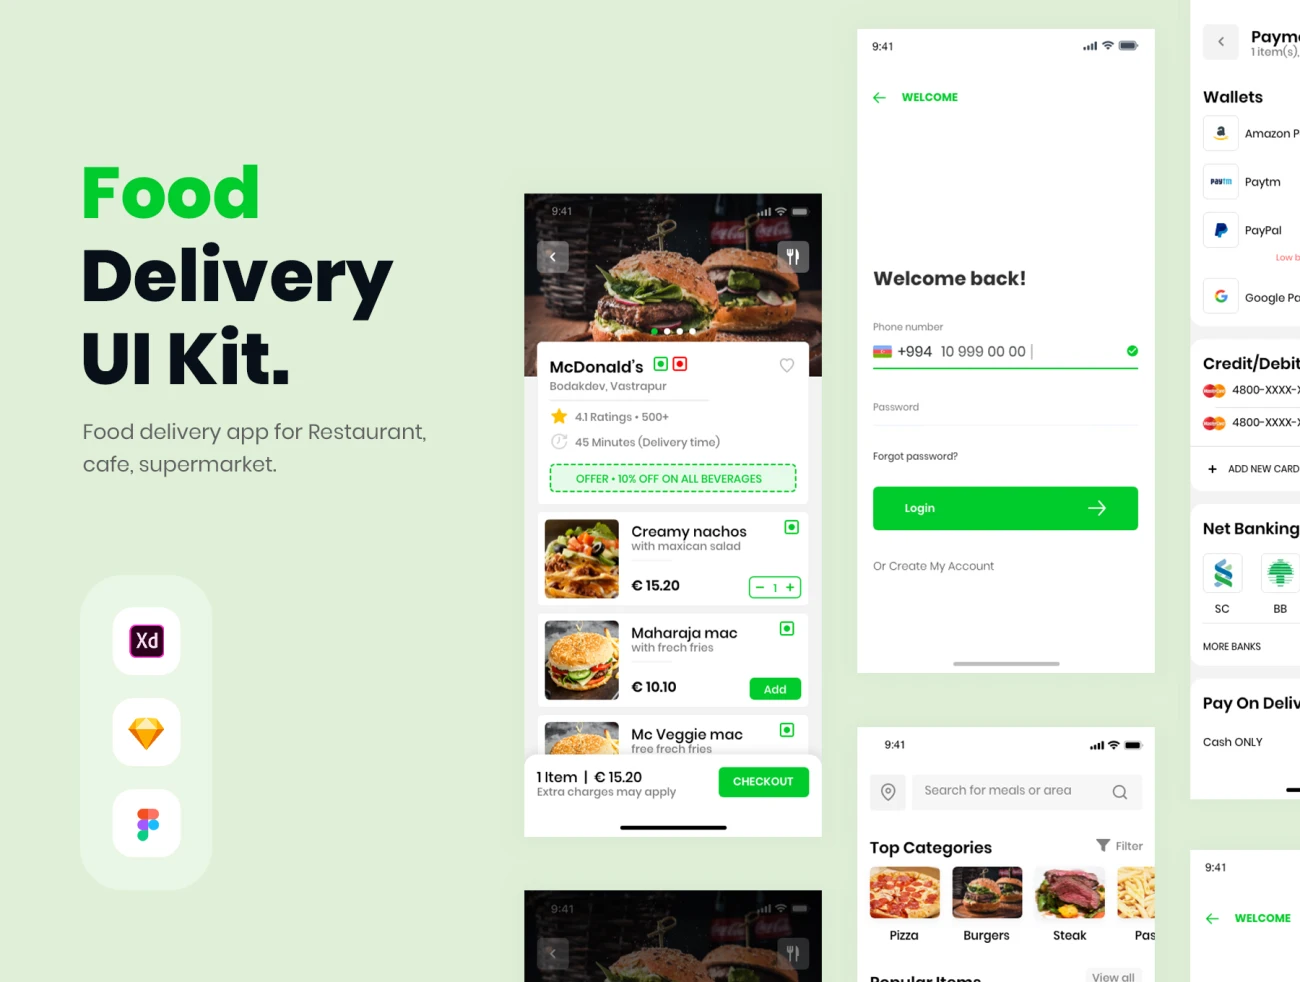 Food delivery App UI Kit 食品配送应用程序UI套件-UI/UX、ui套件、主页、介绍、出行、列表、卡片式、应用、引导页、支付、注册、登录页、着陆页、网站、网购、详情、预订-到位啦UI